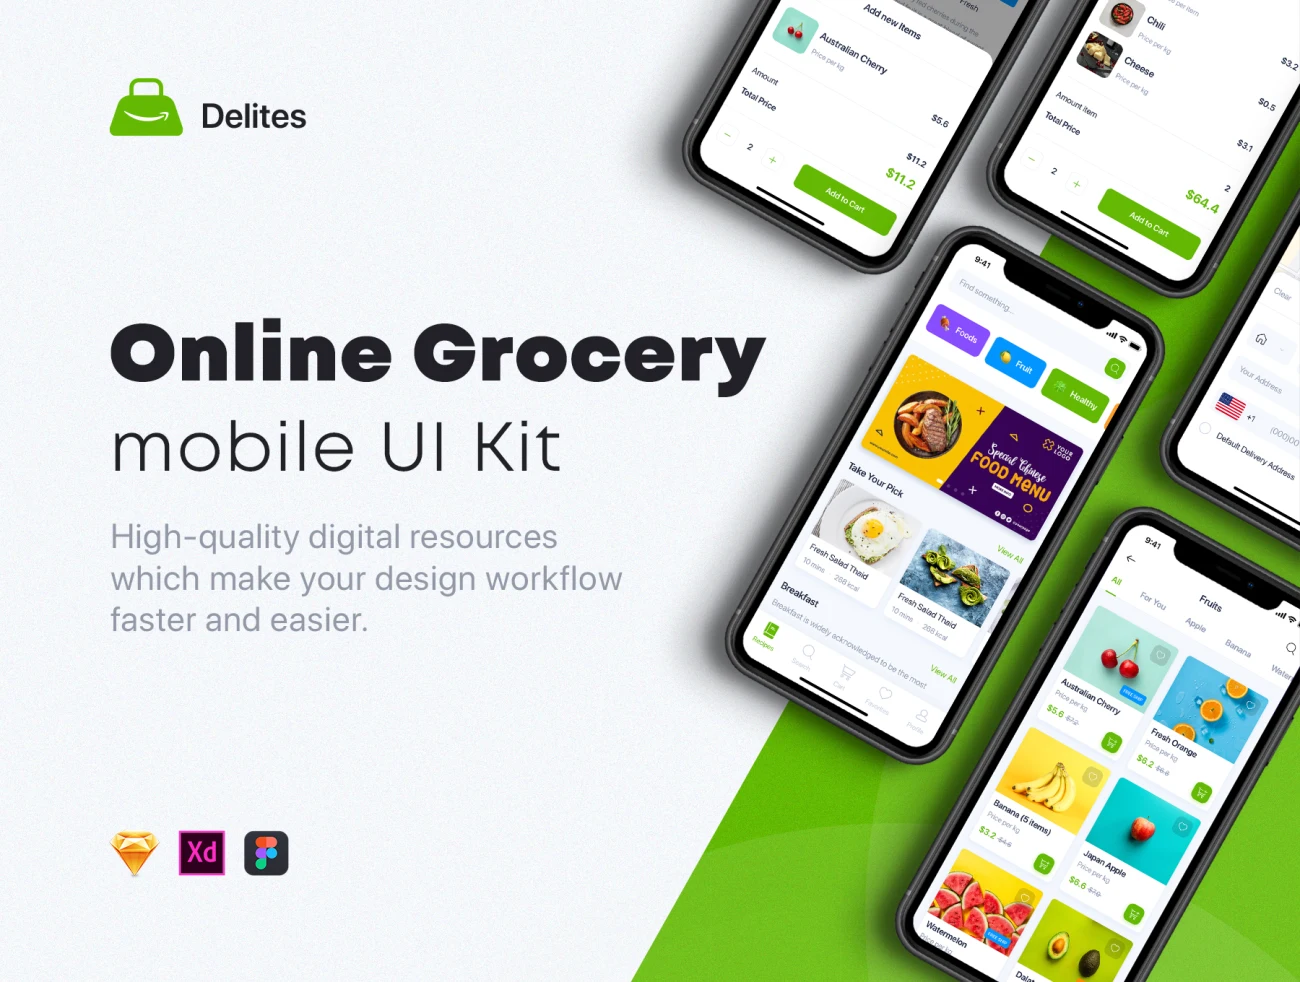 33屏在线日用白货烹饪食谱UI套件 Delites – Online Grocery & Recipes Ul Kit插图1